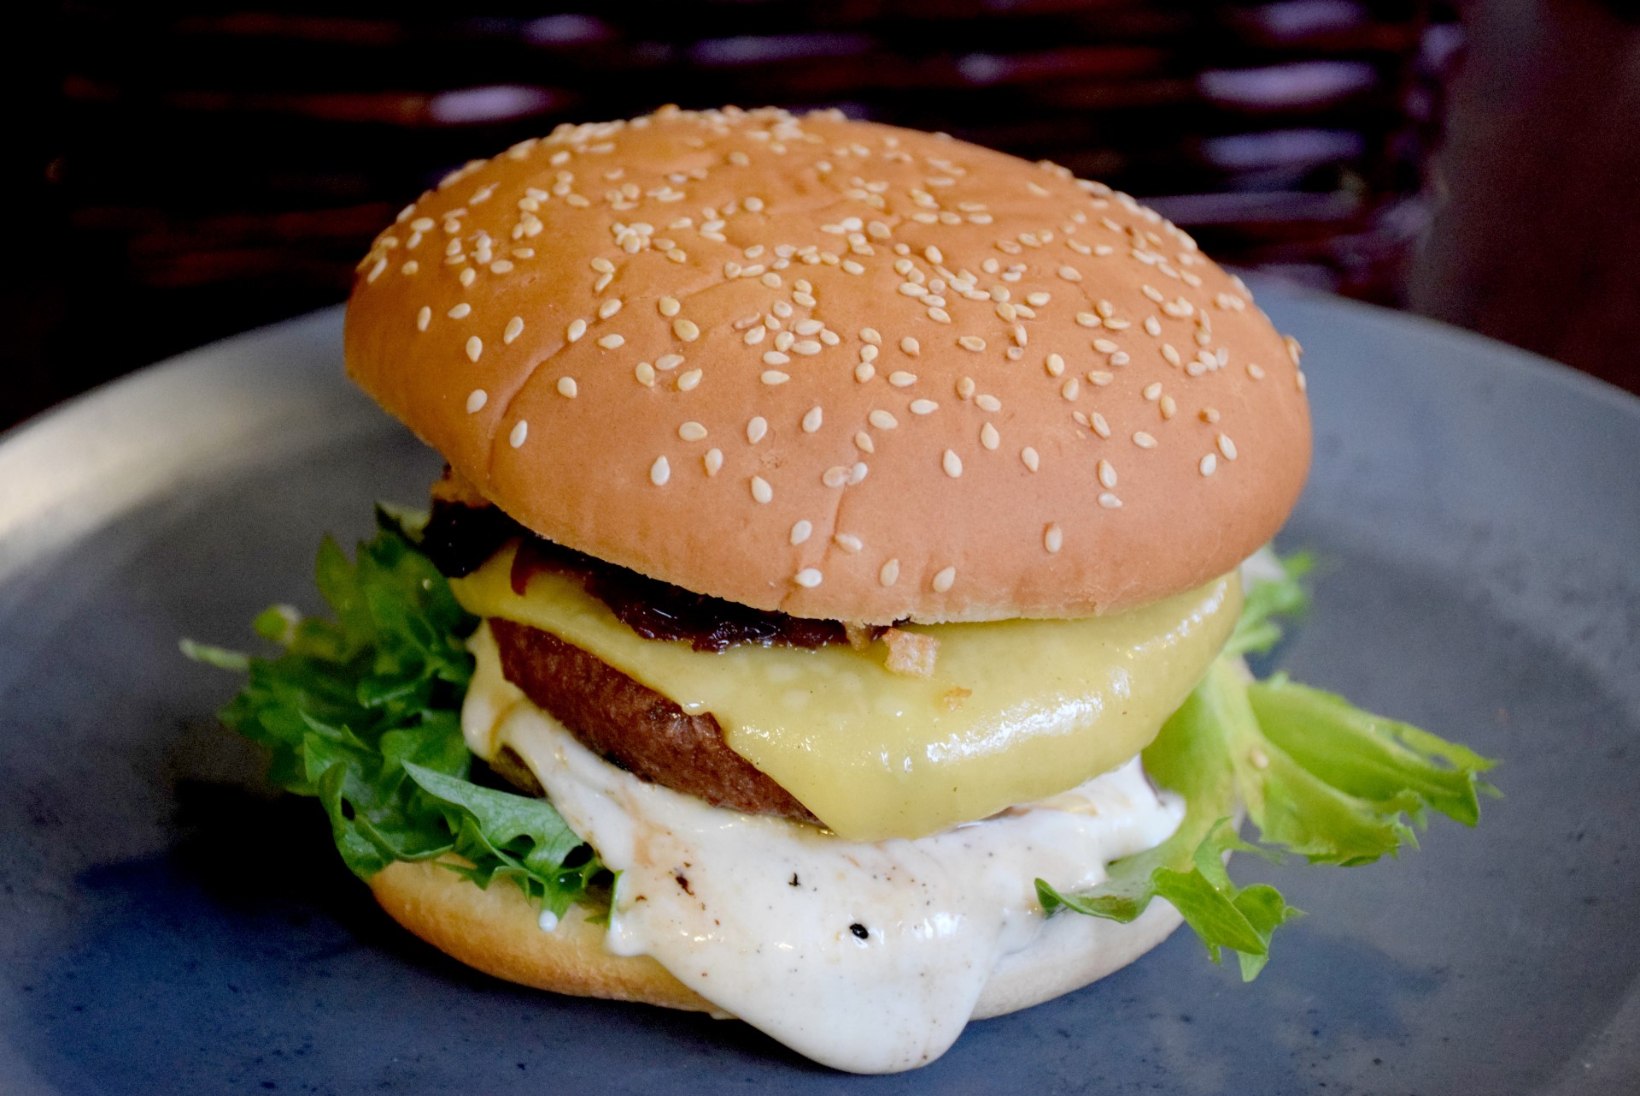 HEAD ISU! 9 hõrku veganburgerit, mida sel aastal Tartus proovima peab